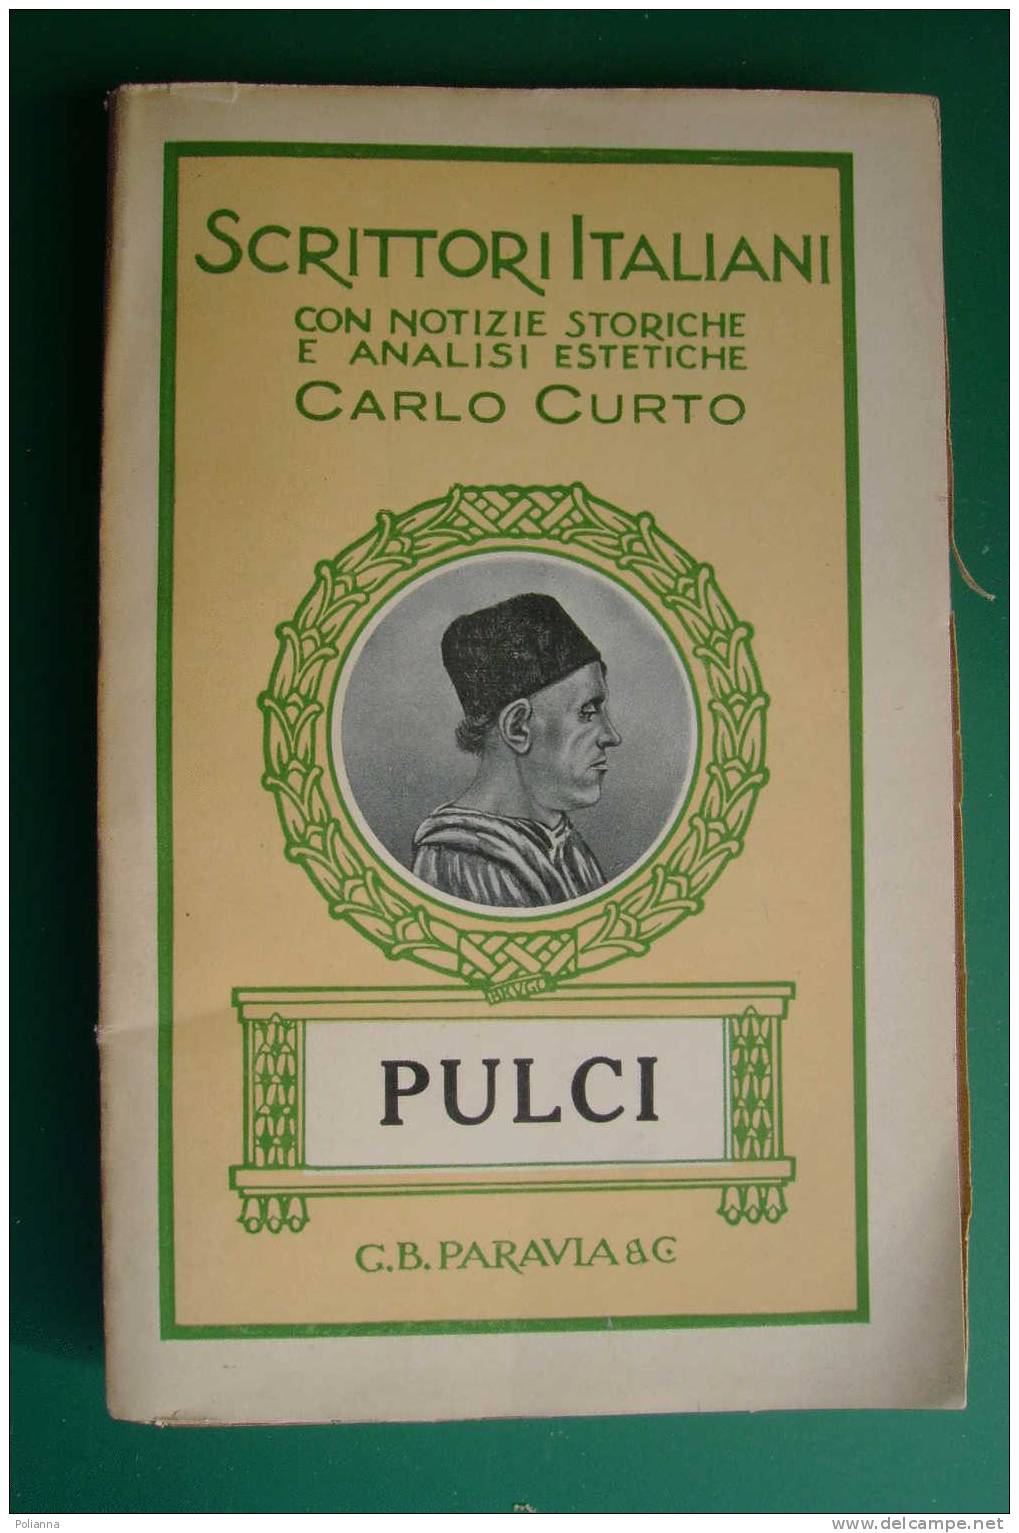 PDD/43 Scrittori Italiani - Carlo Curto - PULCI  Paravia 1932 - Histoire, Biographie, Philosophie